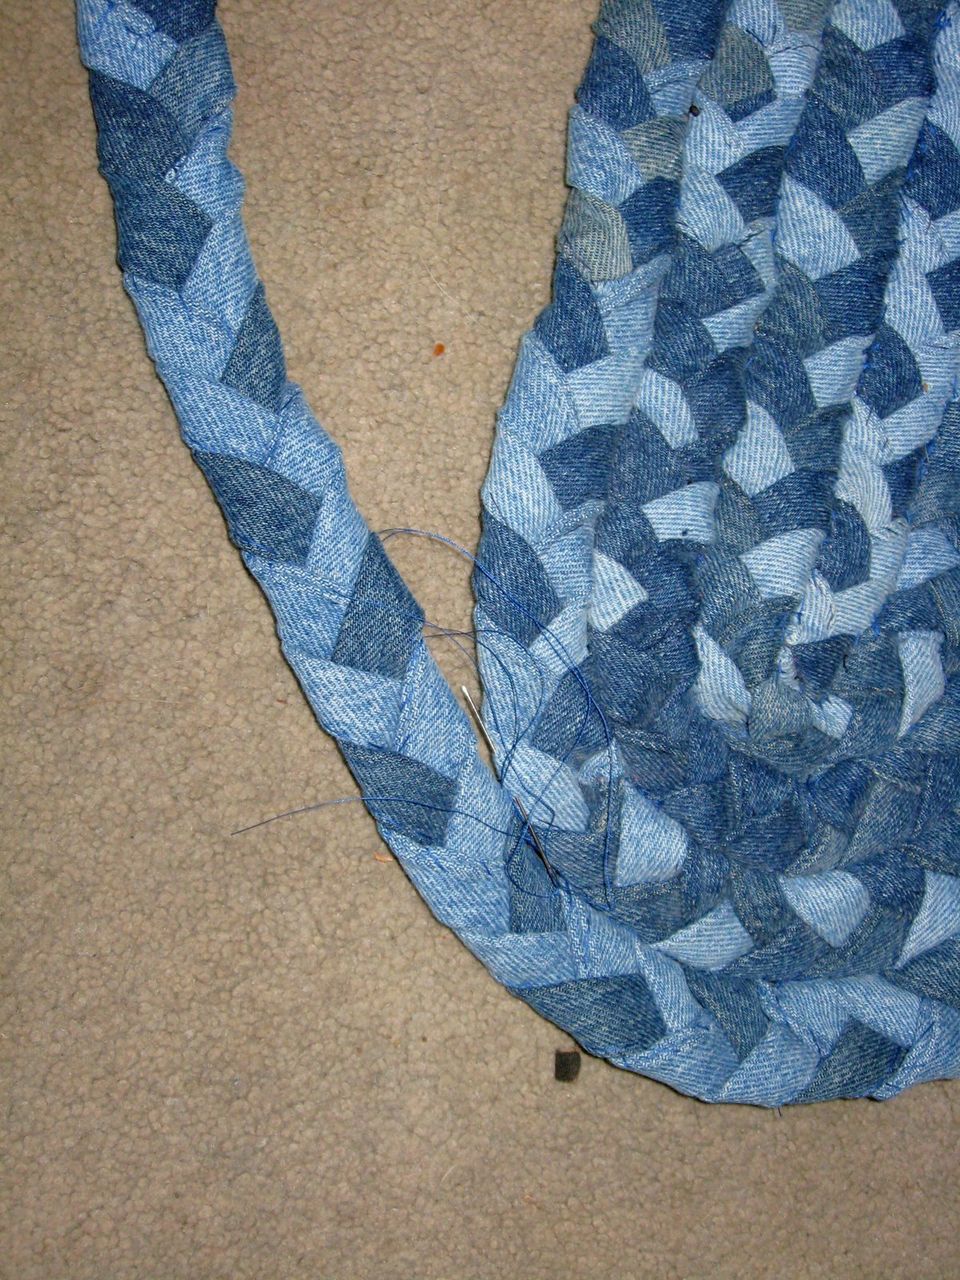 Плетеные коврики из косичек своими руками с использованием полотенец и футболок